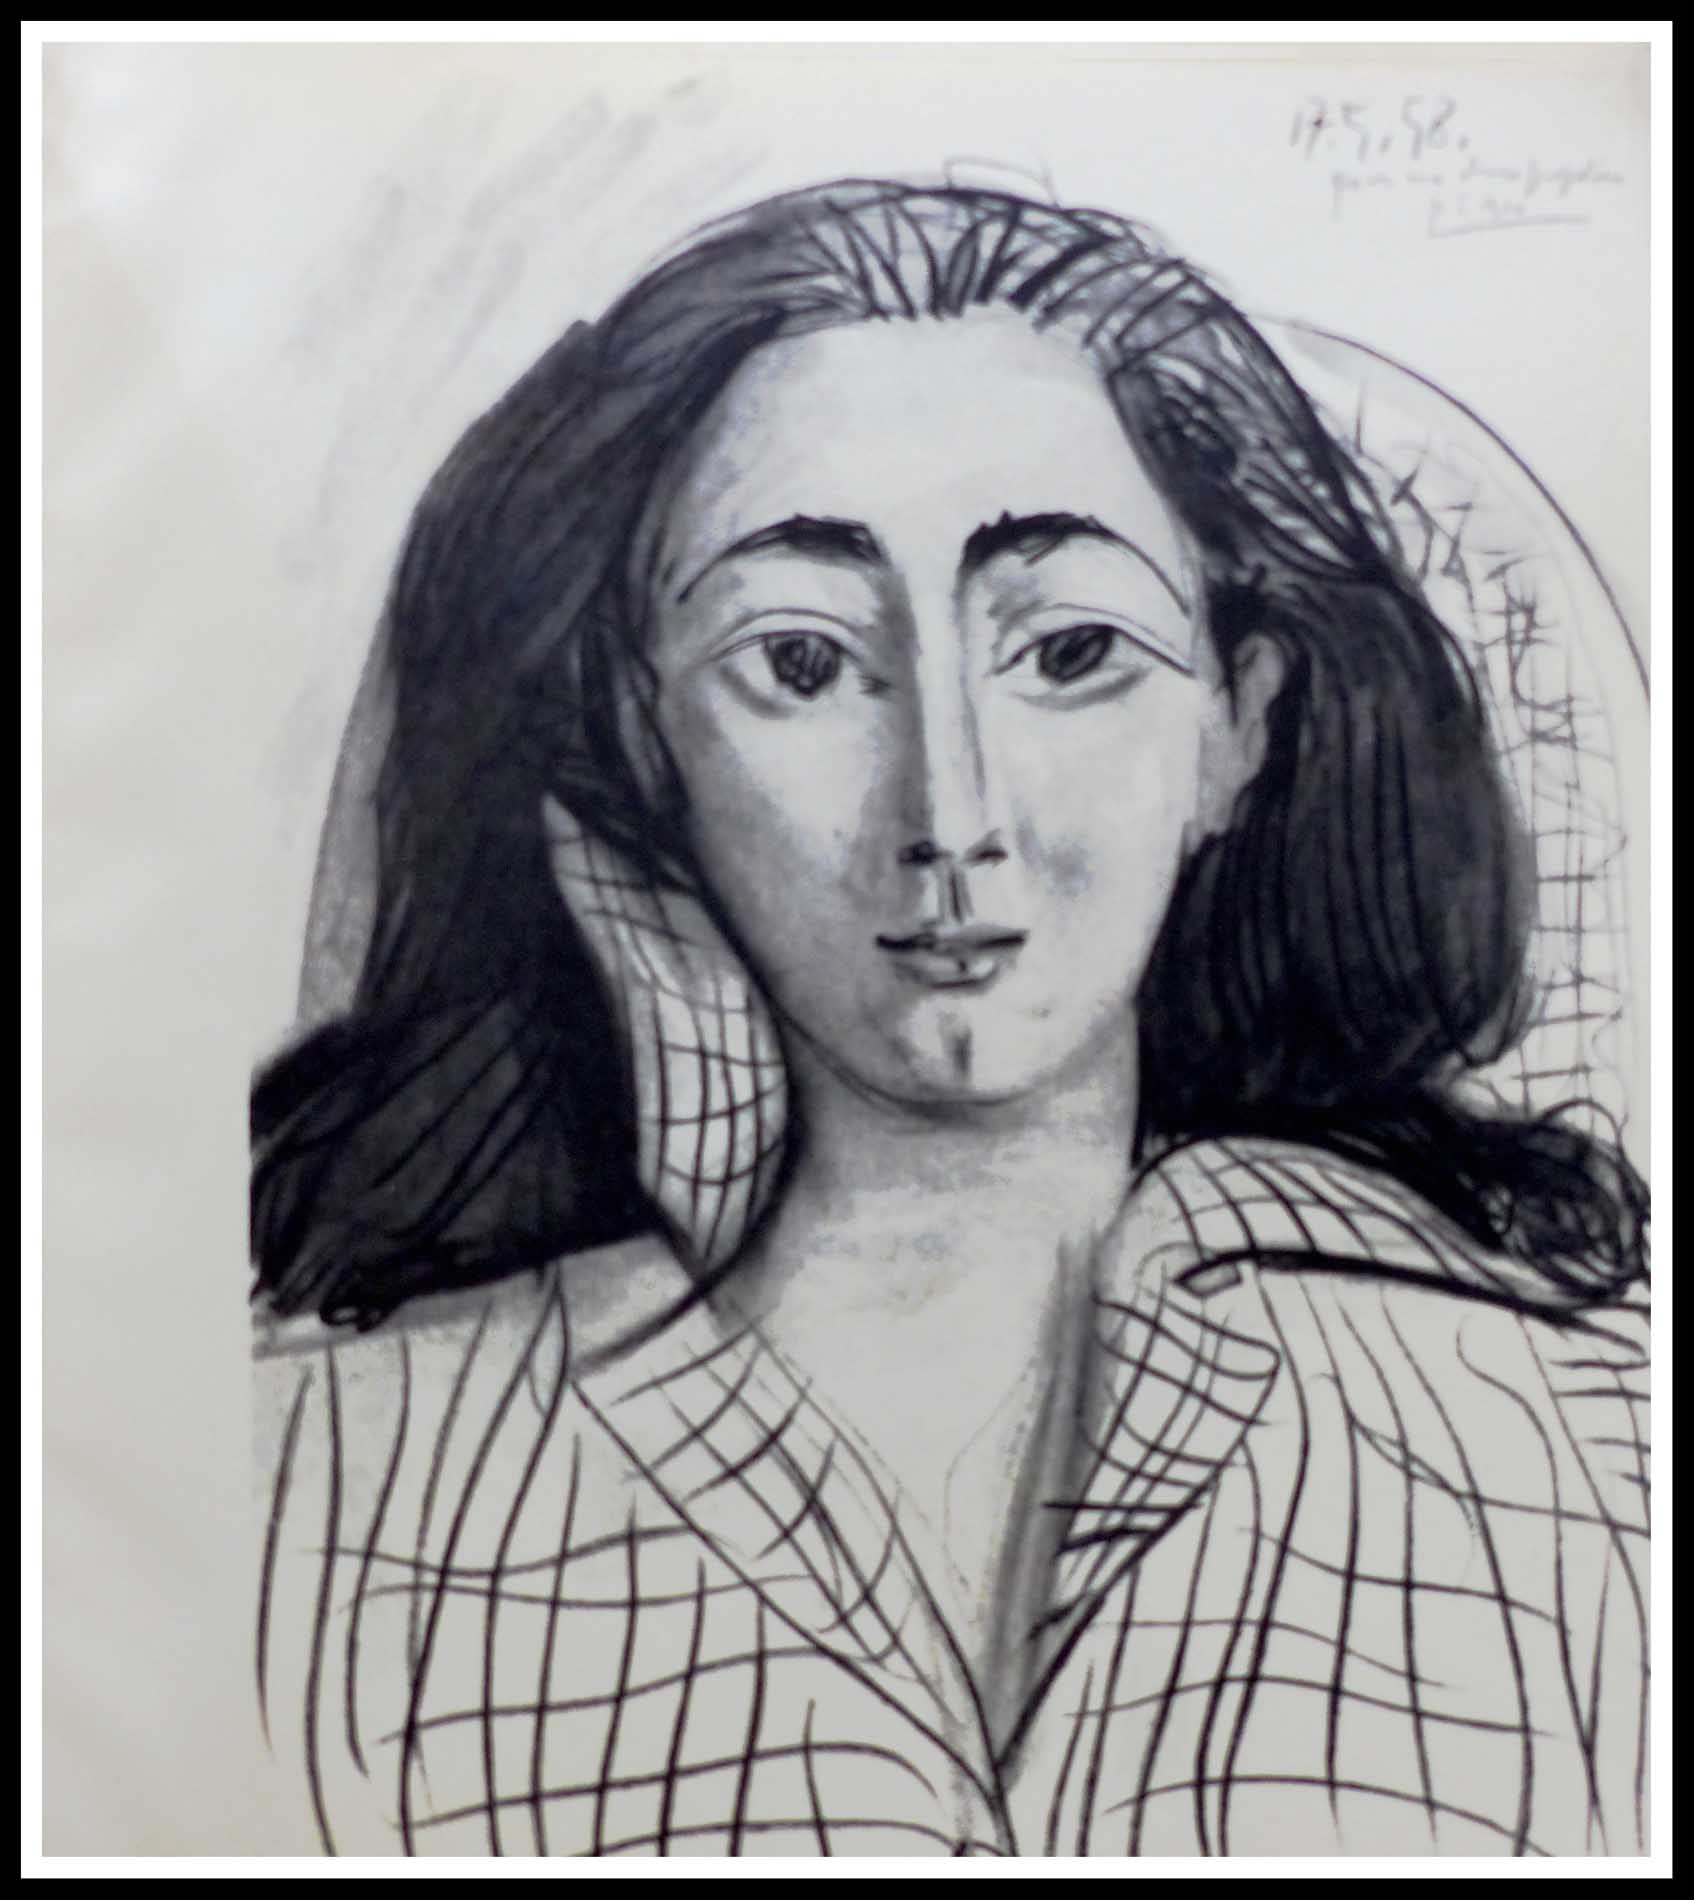 Pour ma chère Jacqueline Picasso signé et daté 17 mai 58 A+ 29.5 x 27.3 cm Edition cercle d art 1964 eau-forte originale atelier crommelynck papier chiffon 150 exemplaires